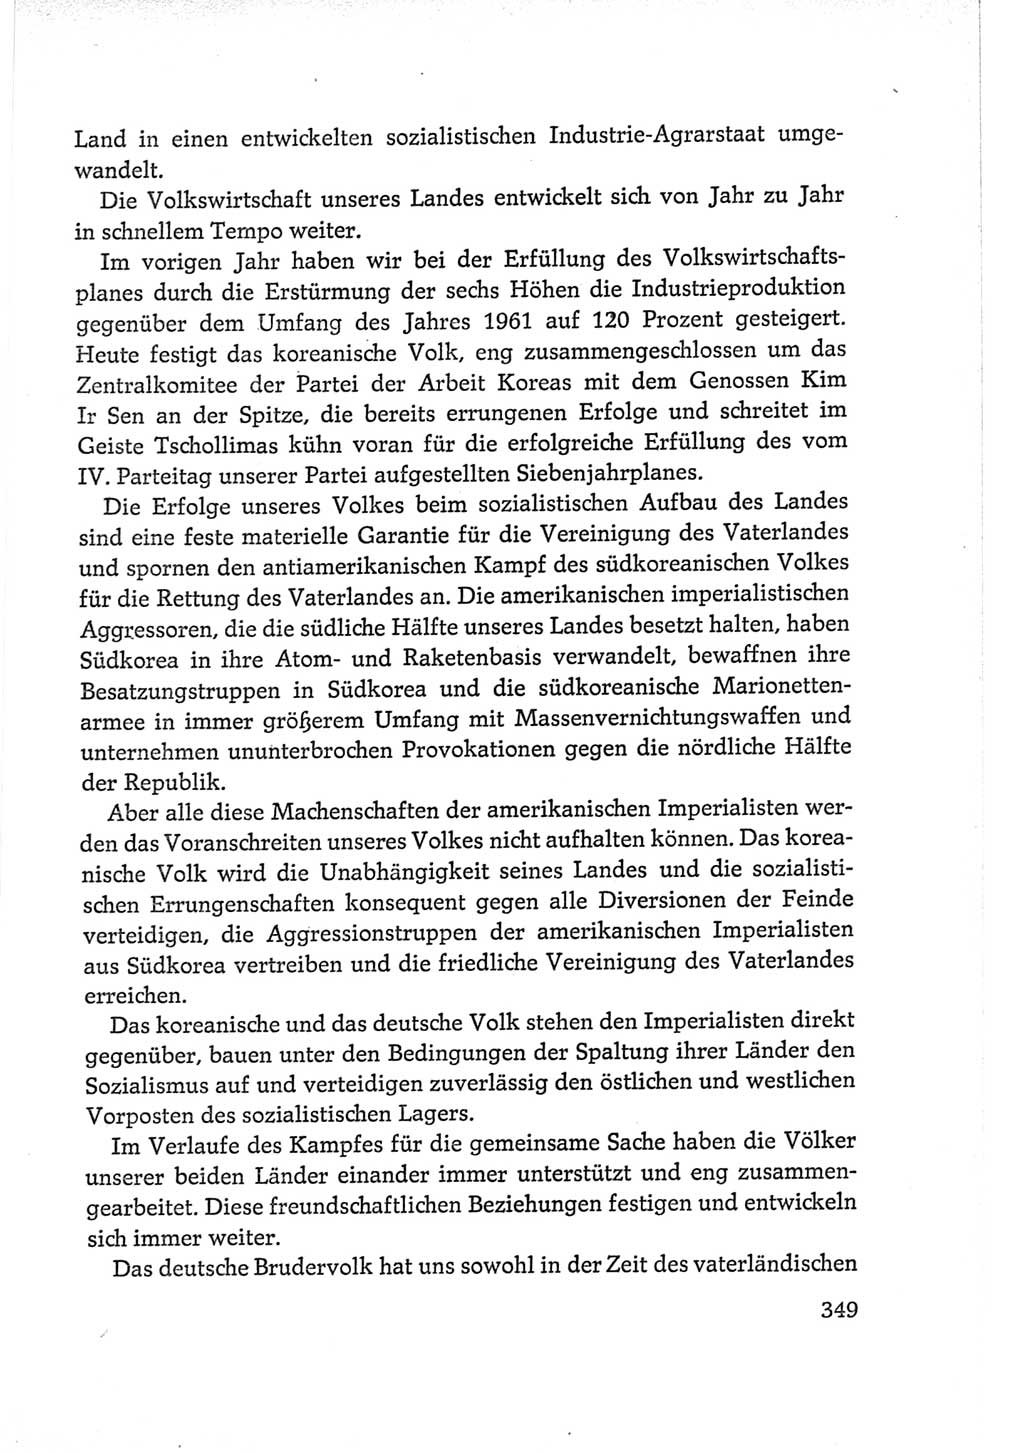 Protokoll der Verhandlungen des Ⅵ. Parteitages der Sozialistischen Einheitspartei Deutschlands (SED) [Deutsche Demokratische Republik (DDR)] 1963, Band Ⅱ, Seite 349 (Prot. Verh. Ⅵ. PT SED DDR 1963, Bd. Ⅱ, S. 349)